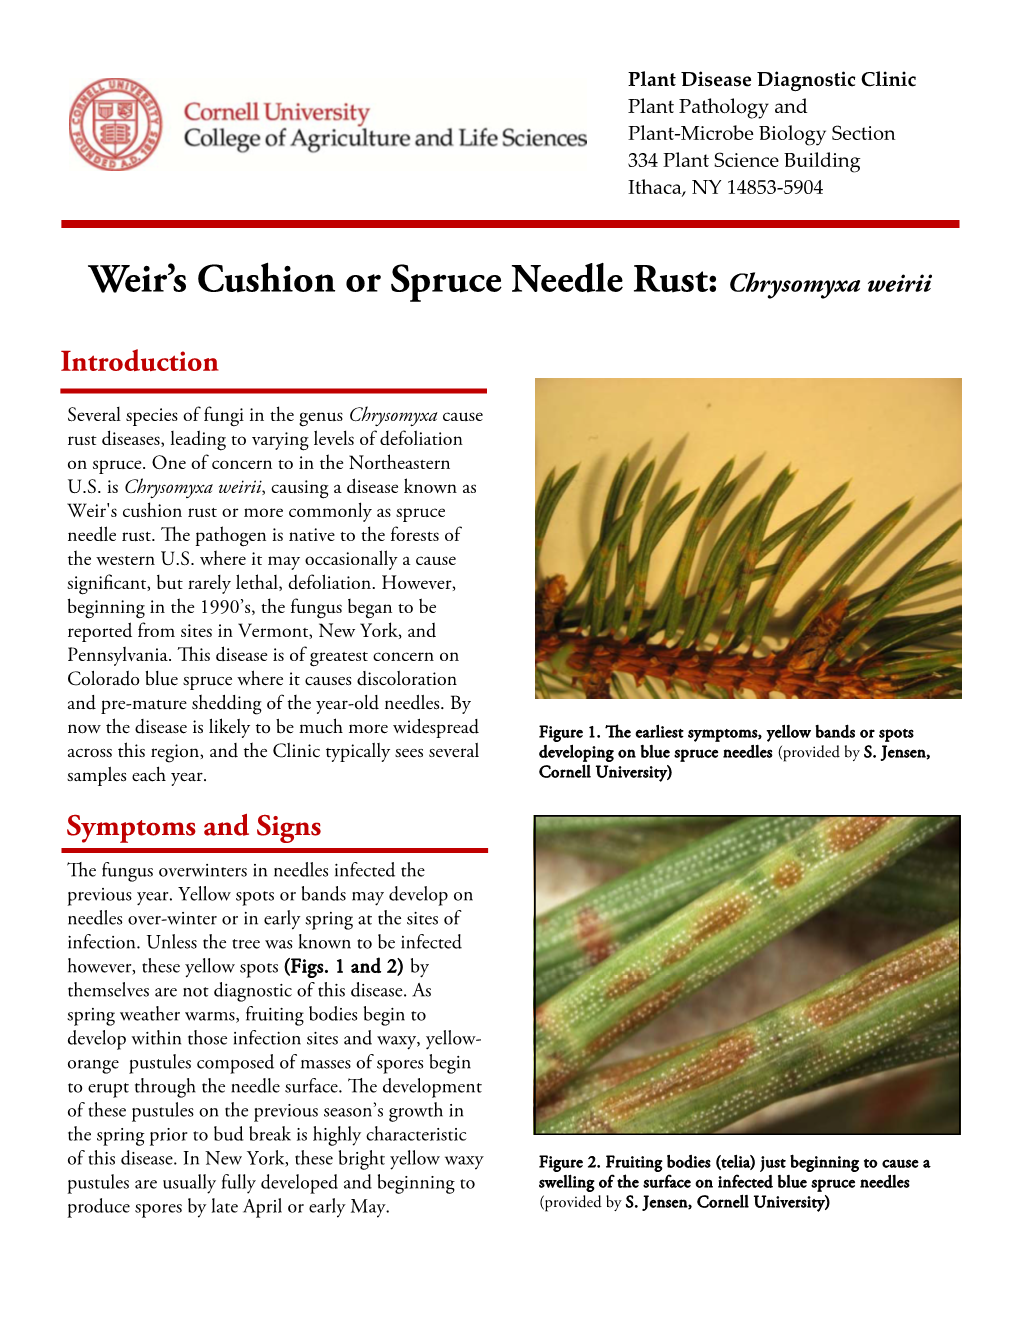 Weir's Cushion Or Spruce Needle Rust: Chrysomyxa Weirii